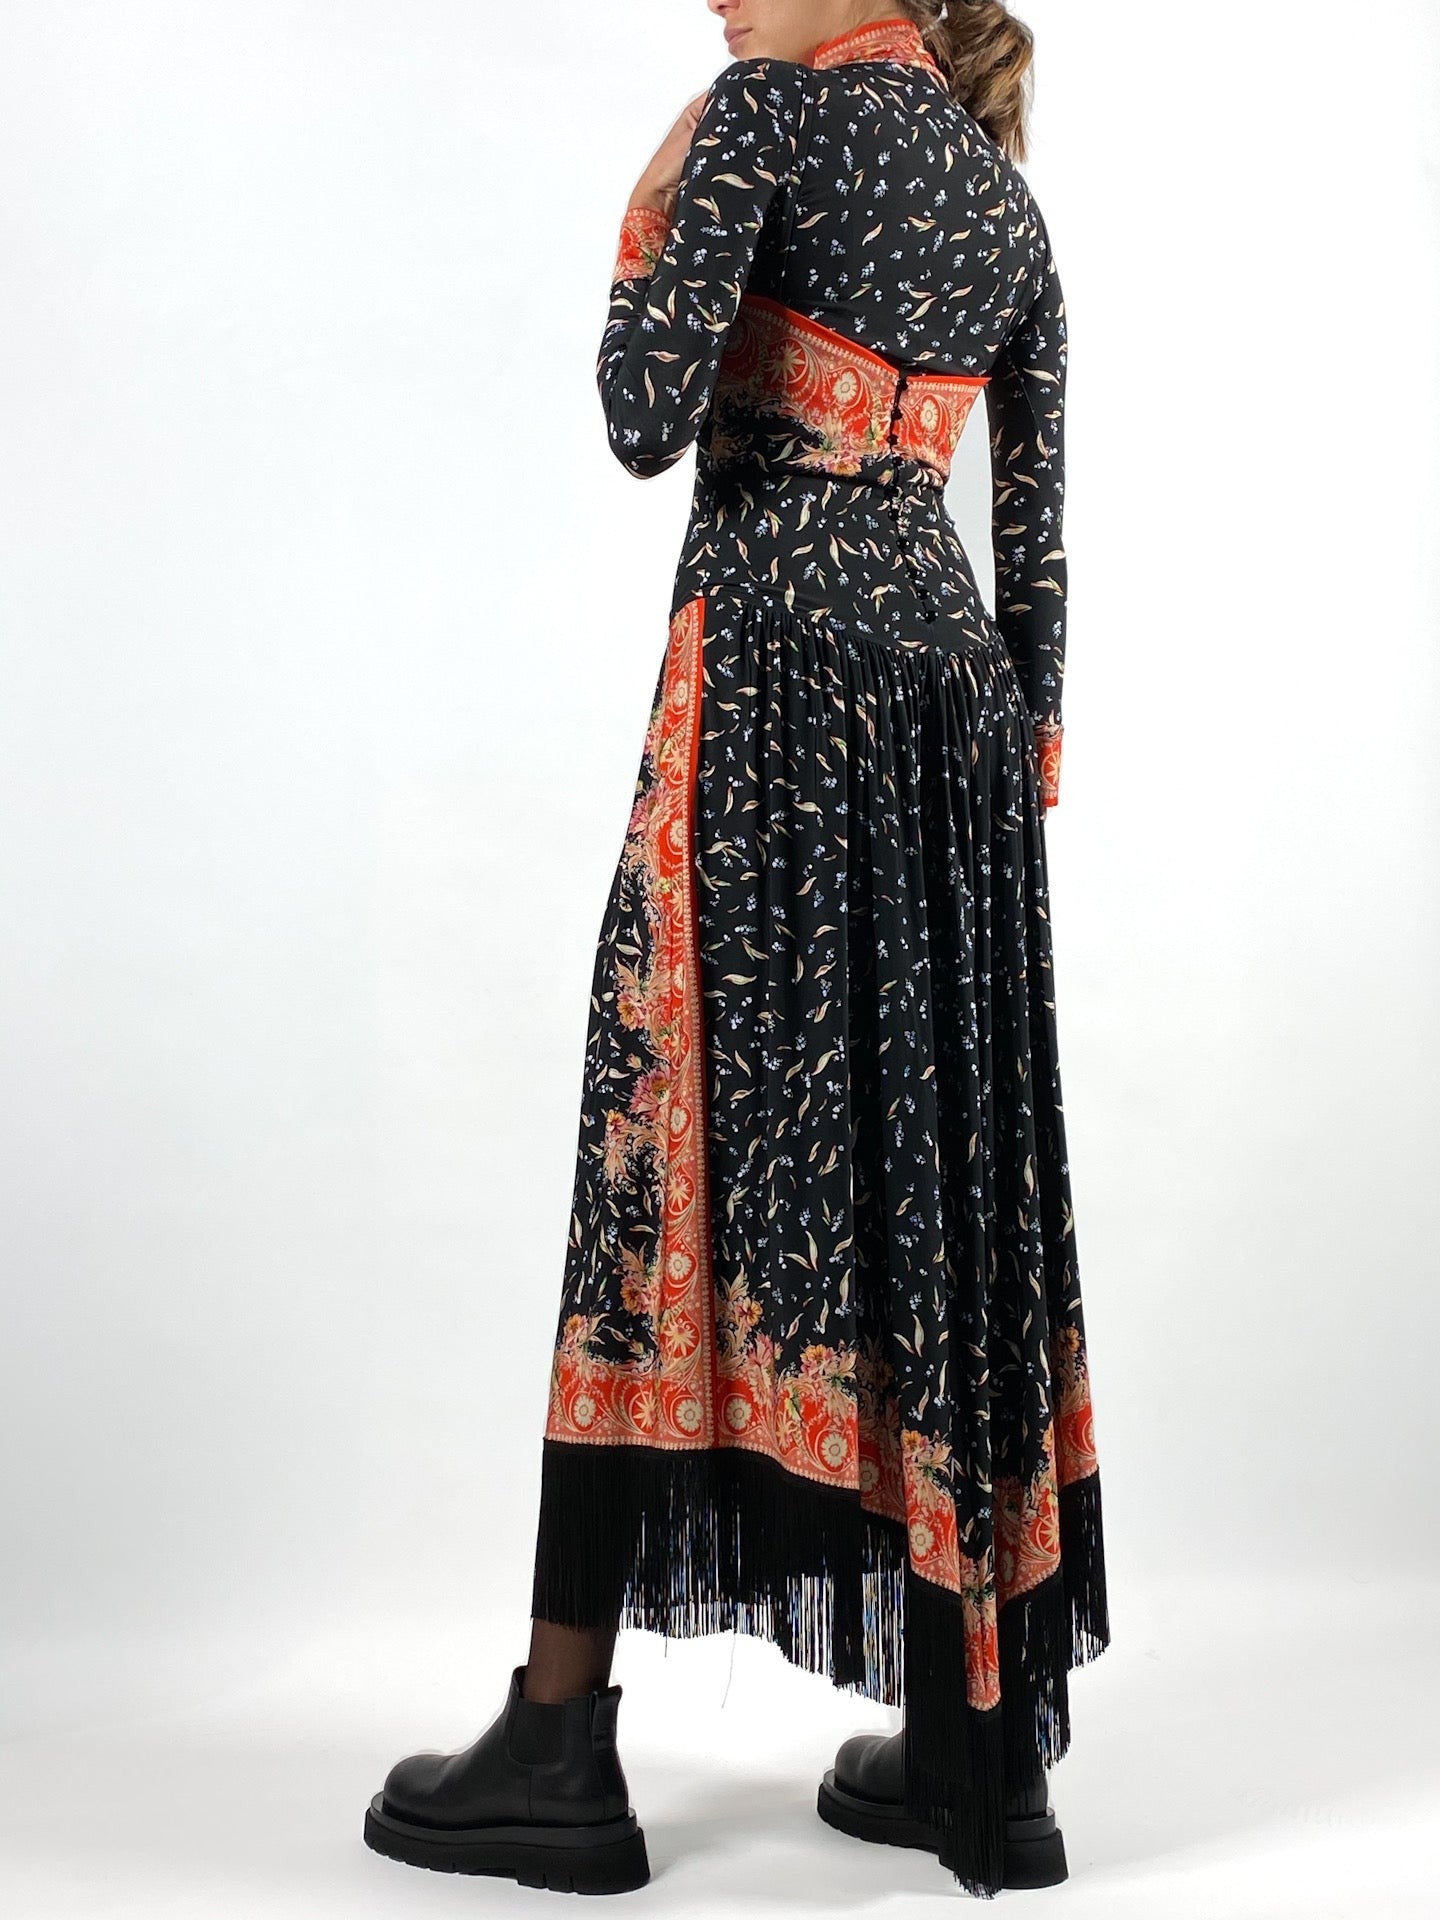 Fringe-Trimmed Printed Maxi Dress